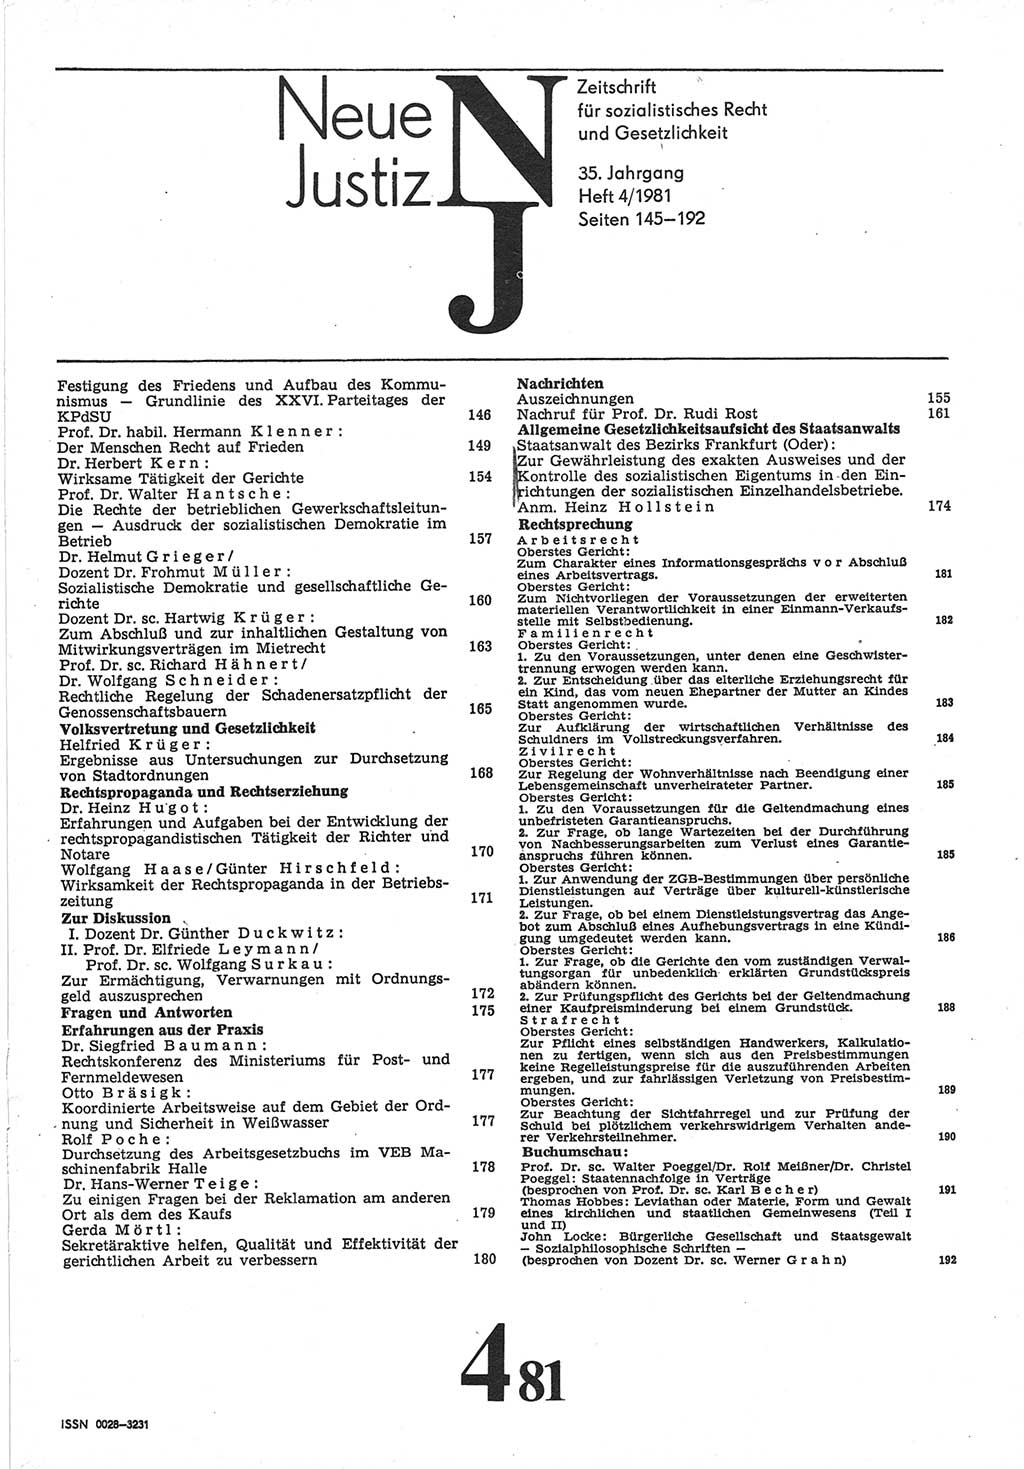 Neue Justiz (NJ), Zeitschrift für sozialistisches Recht und Gesetzlichkeit [Deutsche Demokratische Republik (DDR)], 35. Jahrgang 1981, Seite 145 (NJ DDR 1981, S. 145)